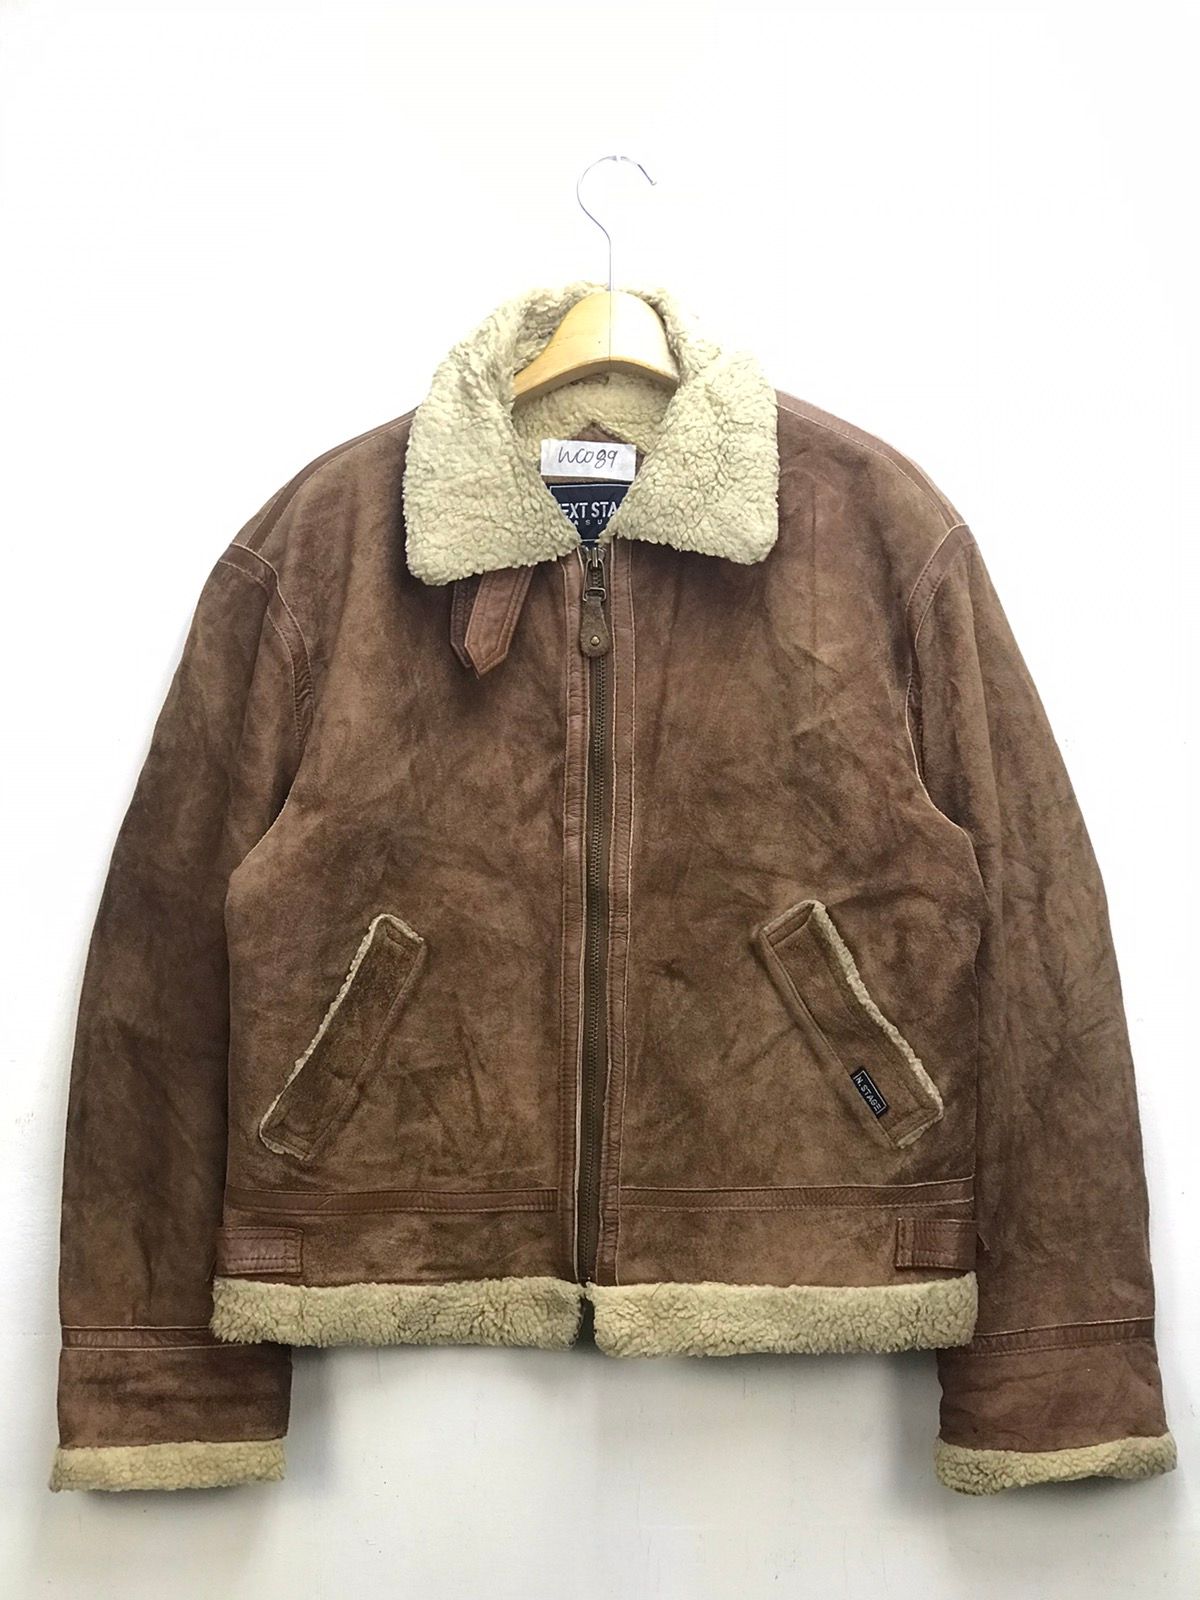 Vintage Vintage Next Stage Sherpa Design Leather Jacket | Grailed